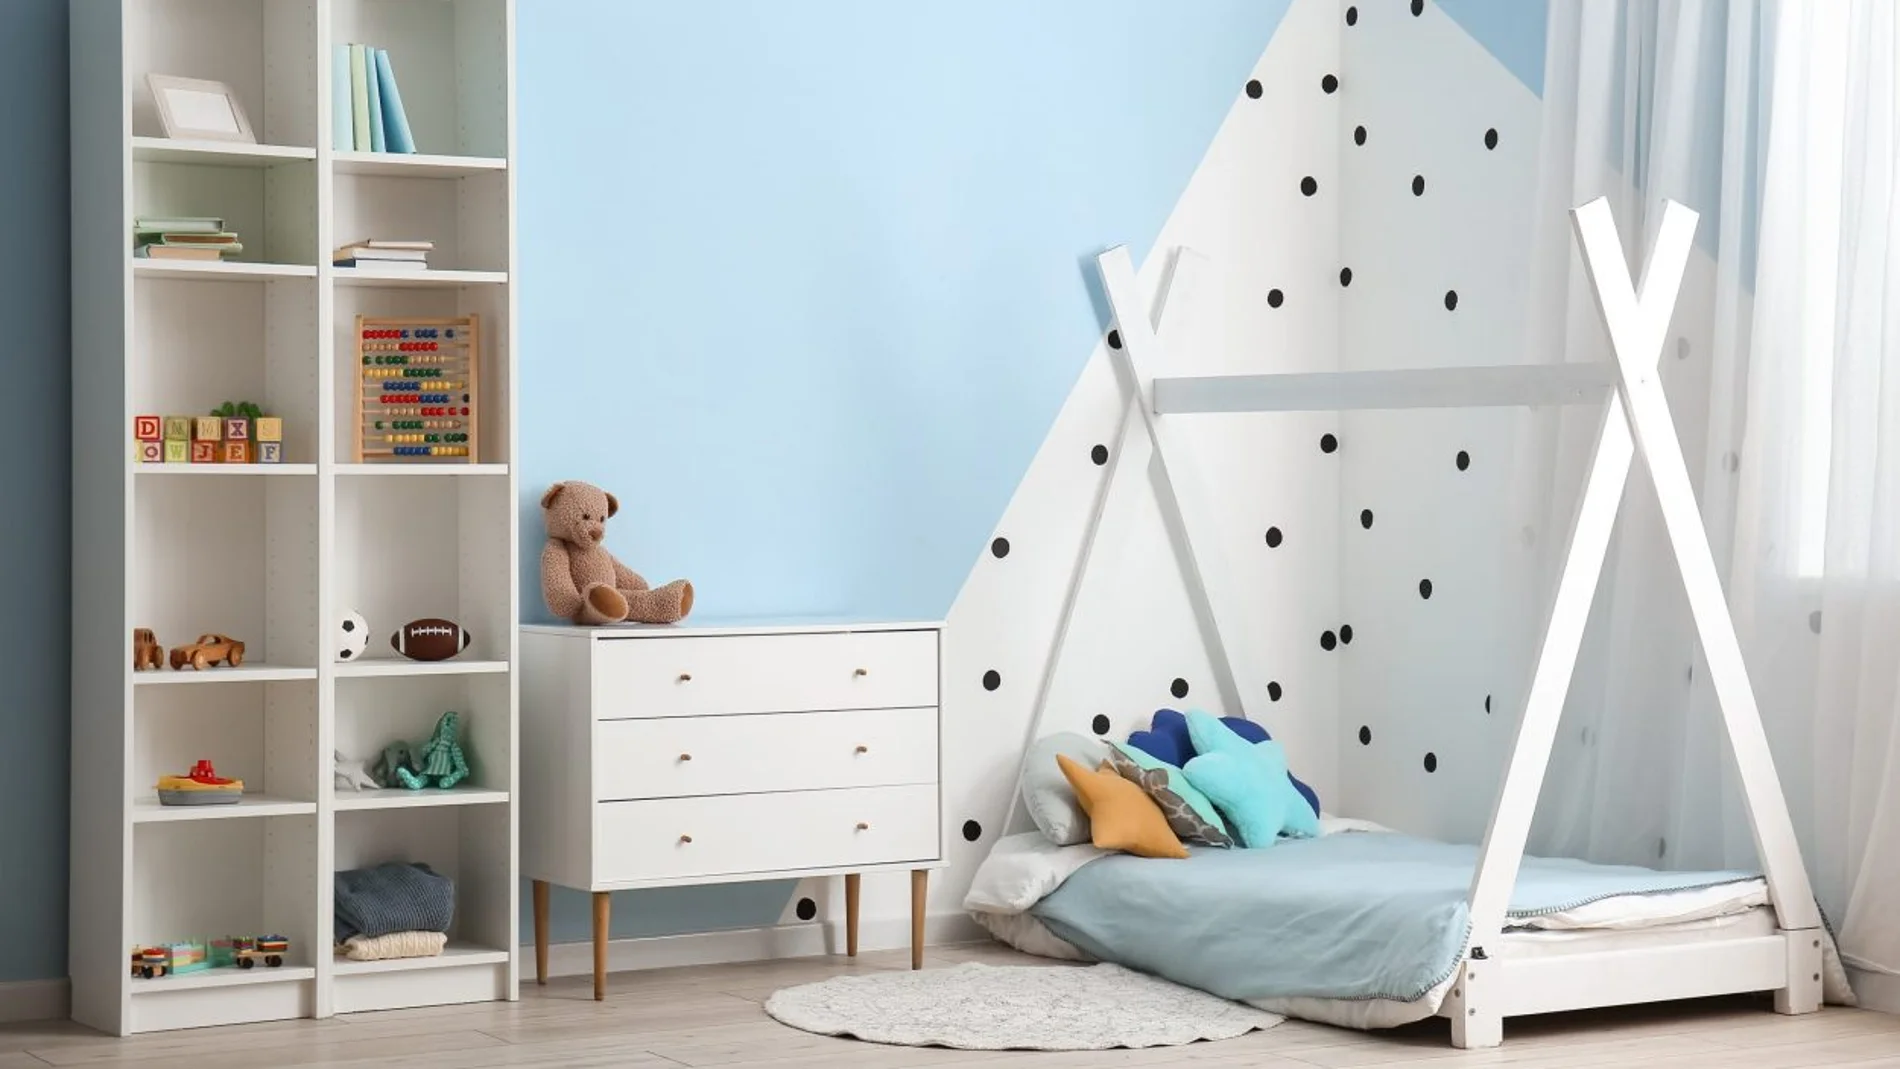 Renueva la habitación de los niños con muebles especiales para ellos 